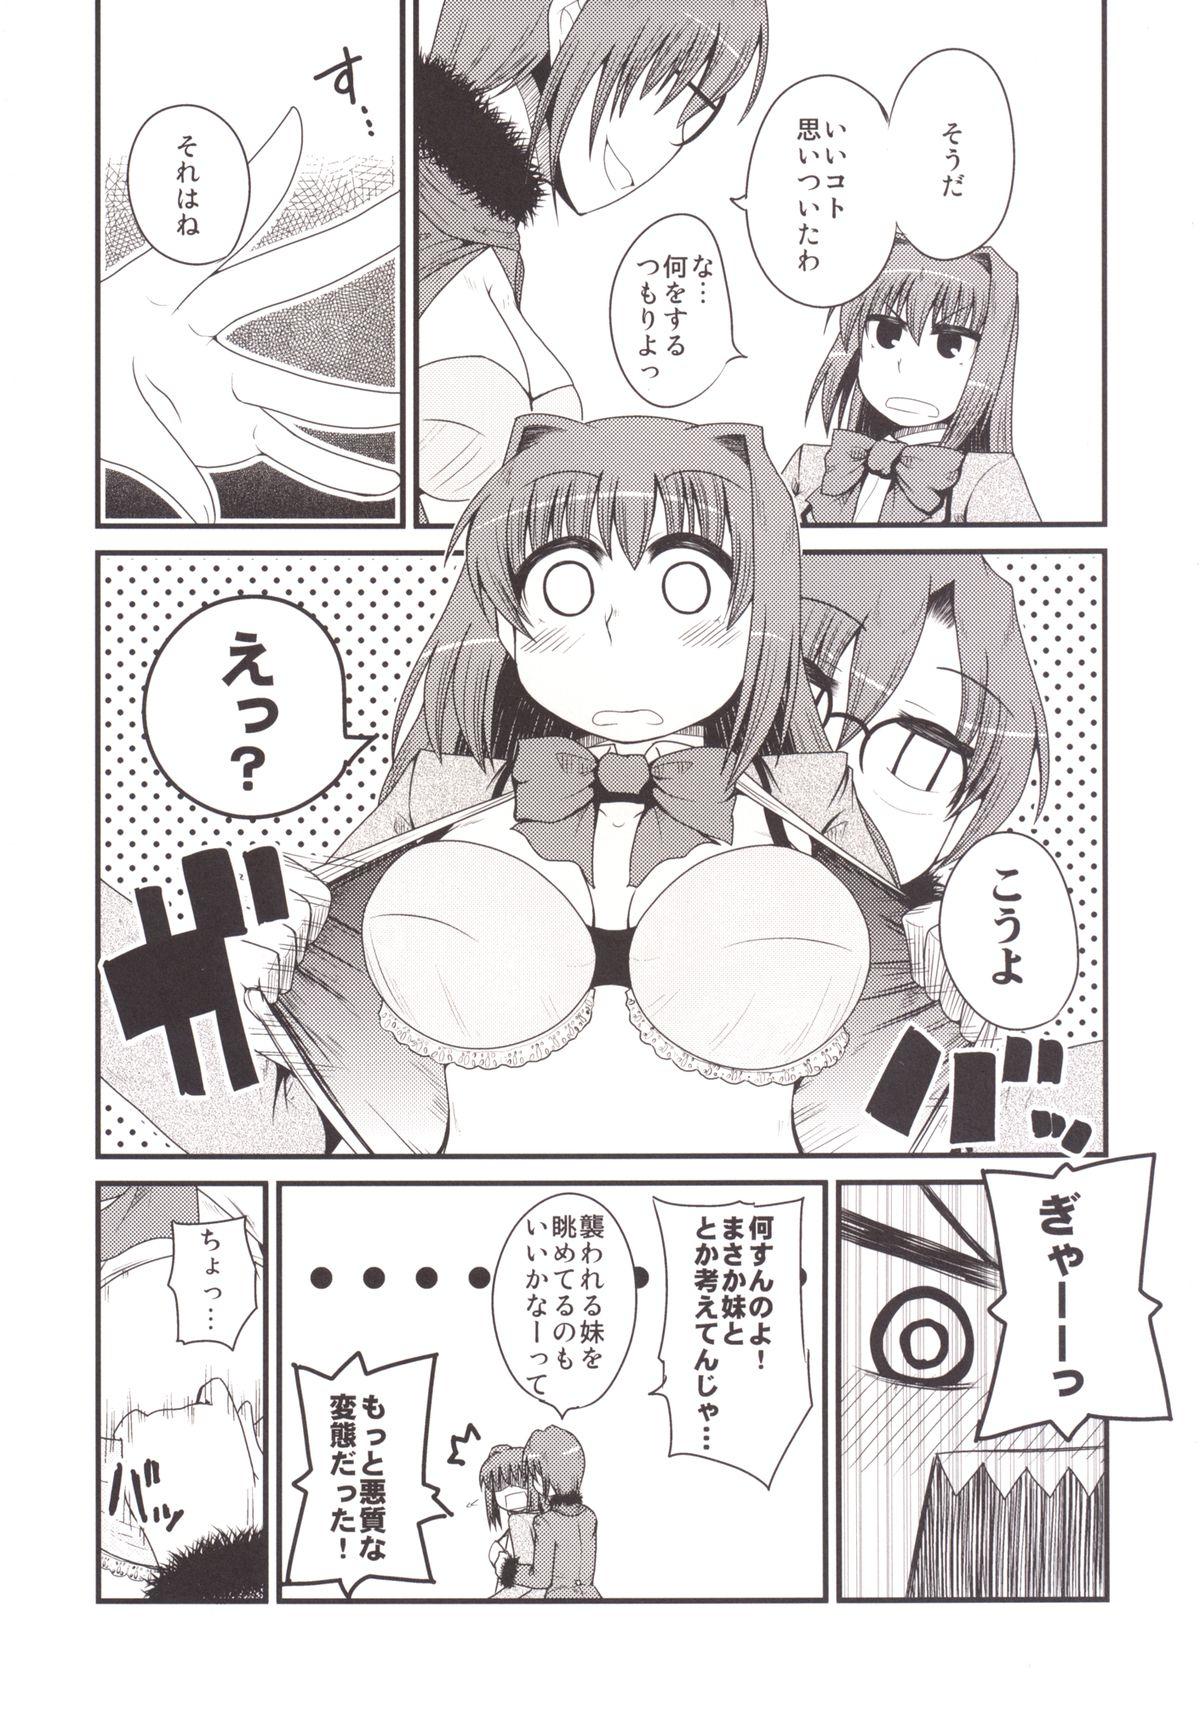 Outside Ittsu Main 2 - Mahou tsukai no yoru Boy Fuck Girl - Page 9